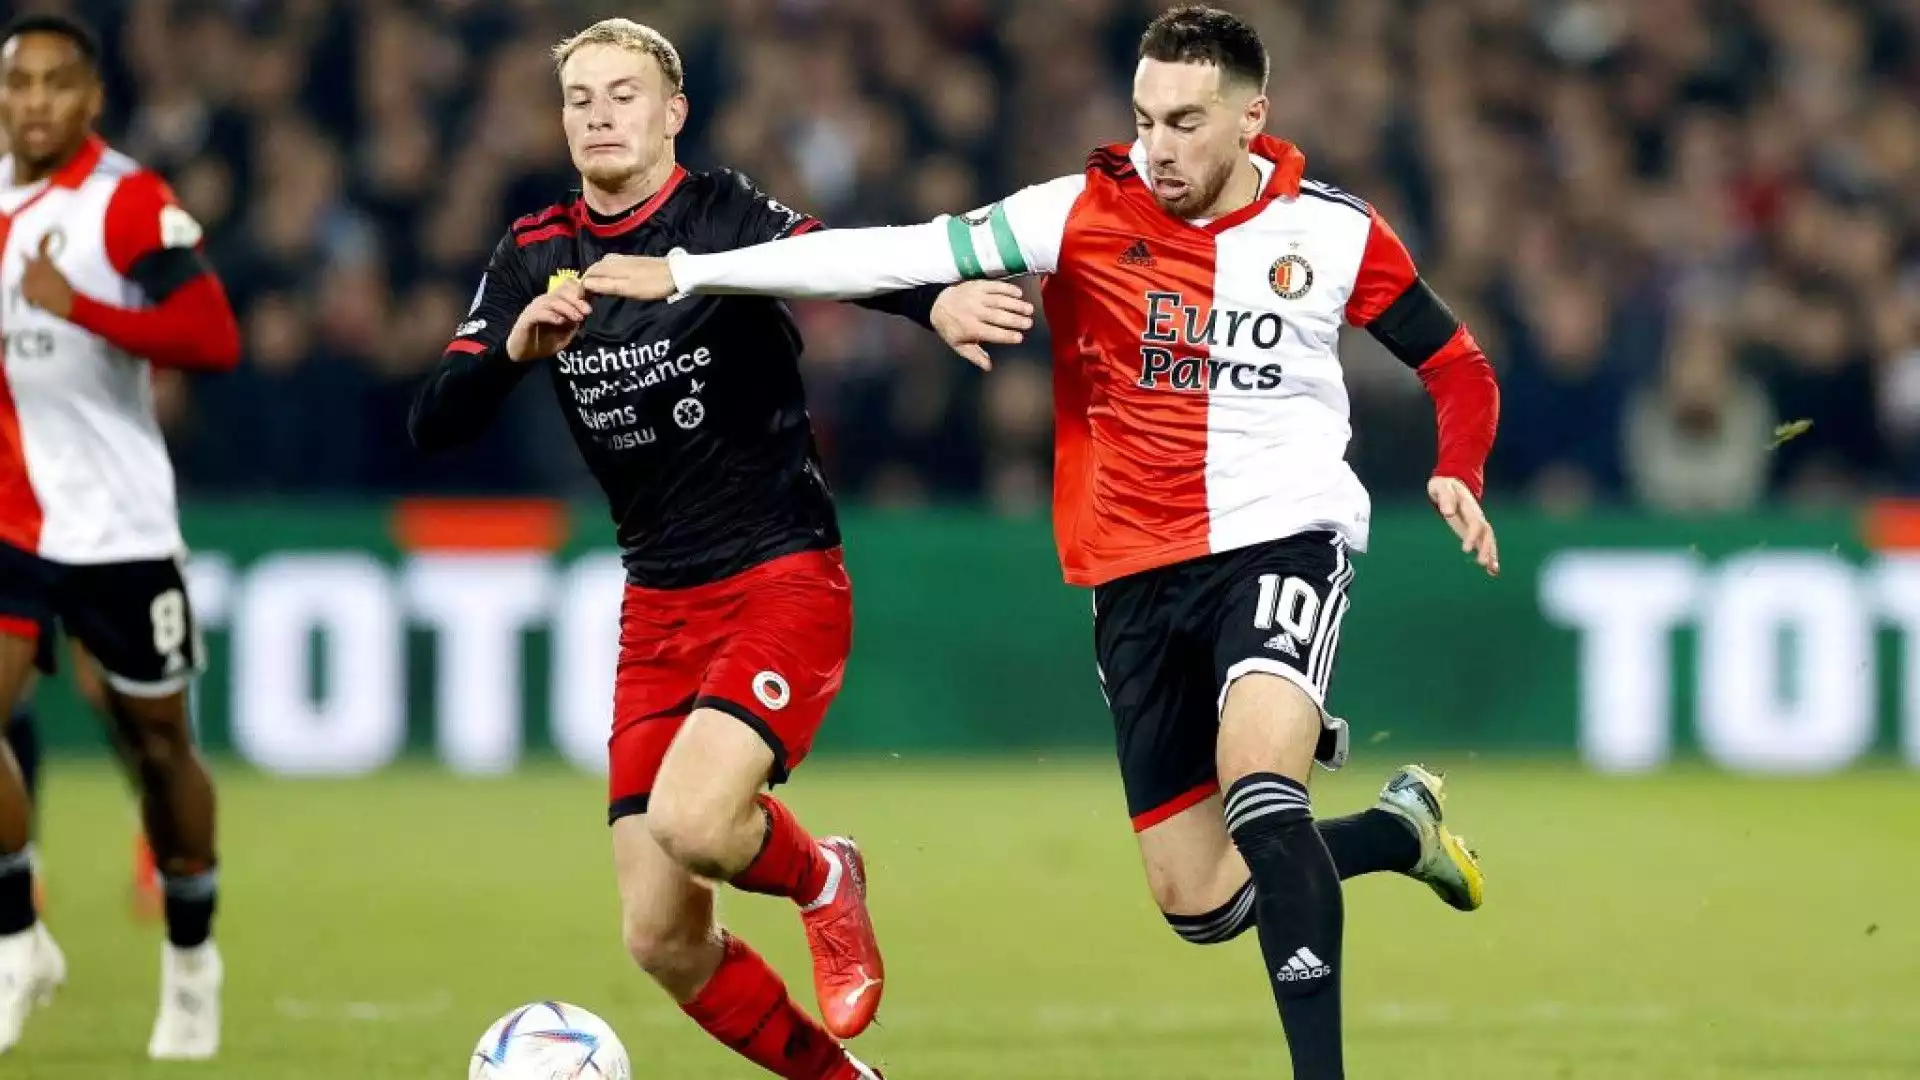 Il centrocampista del Feyenoord è conteso dai due top club che vorrebberlo acquistarlo in estate